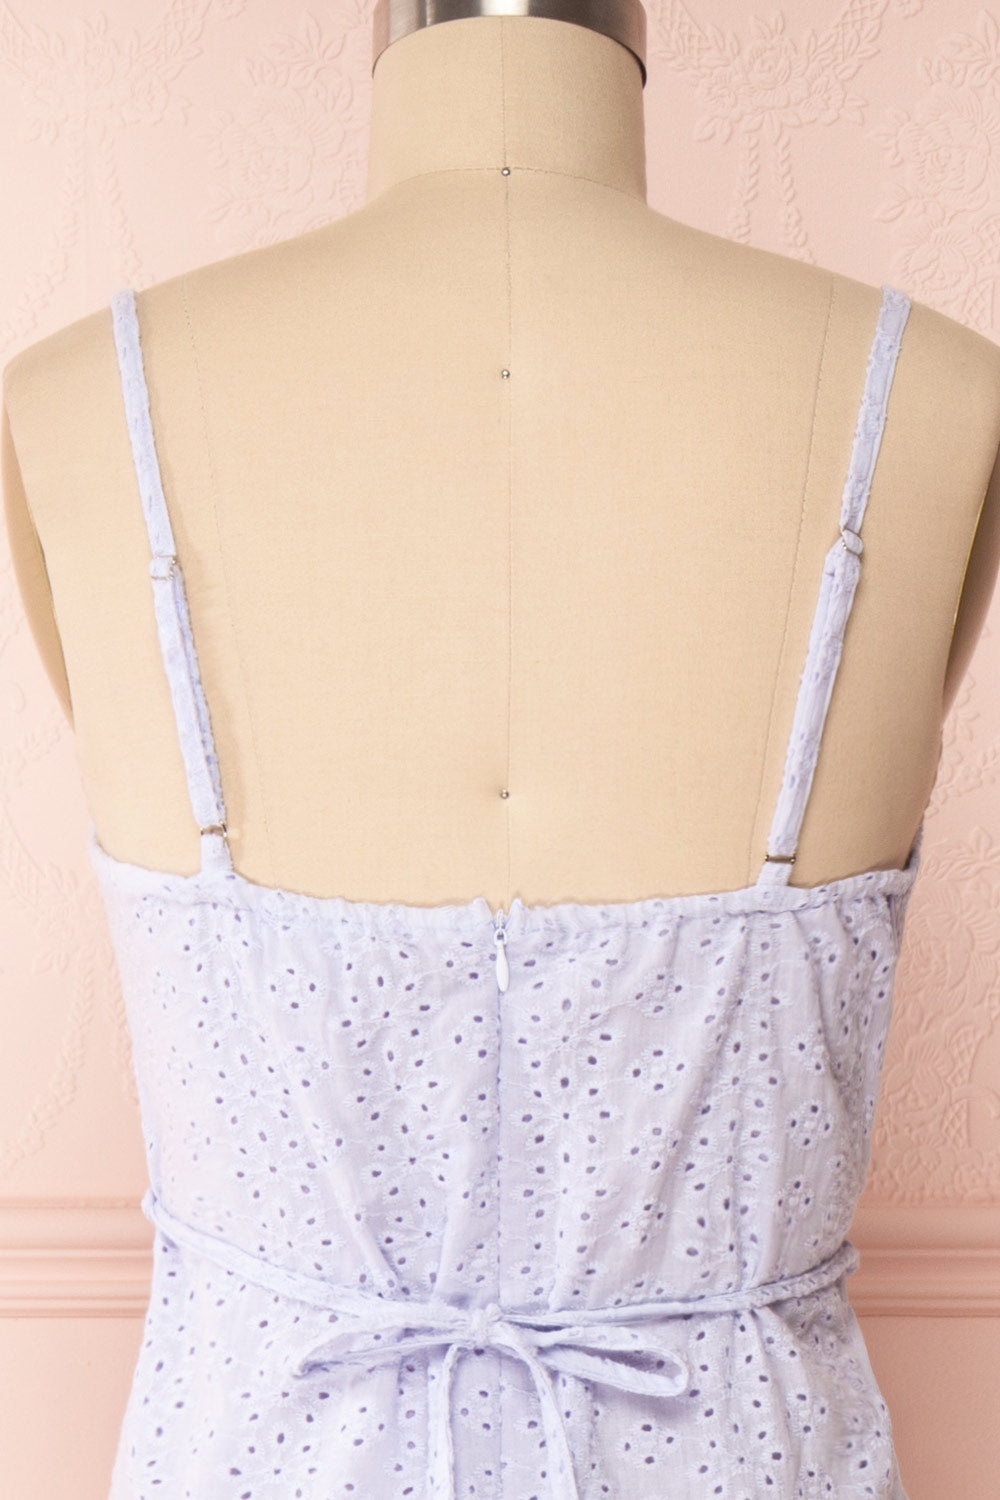 Vidia Lavender Openwork Short Dress | Boutique 1861 back close up